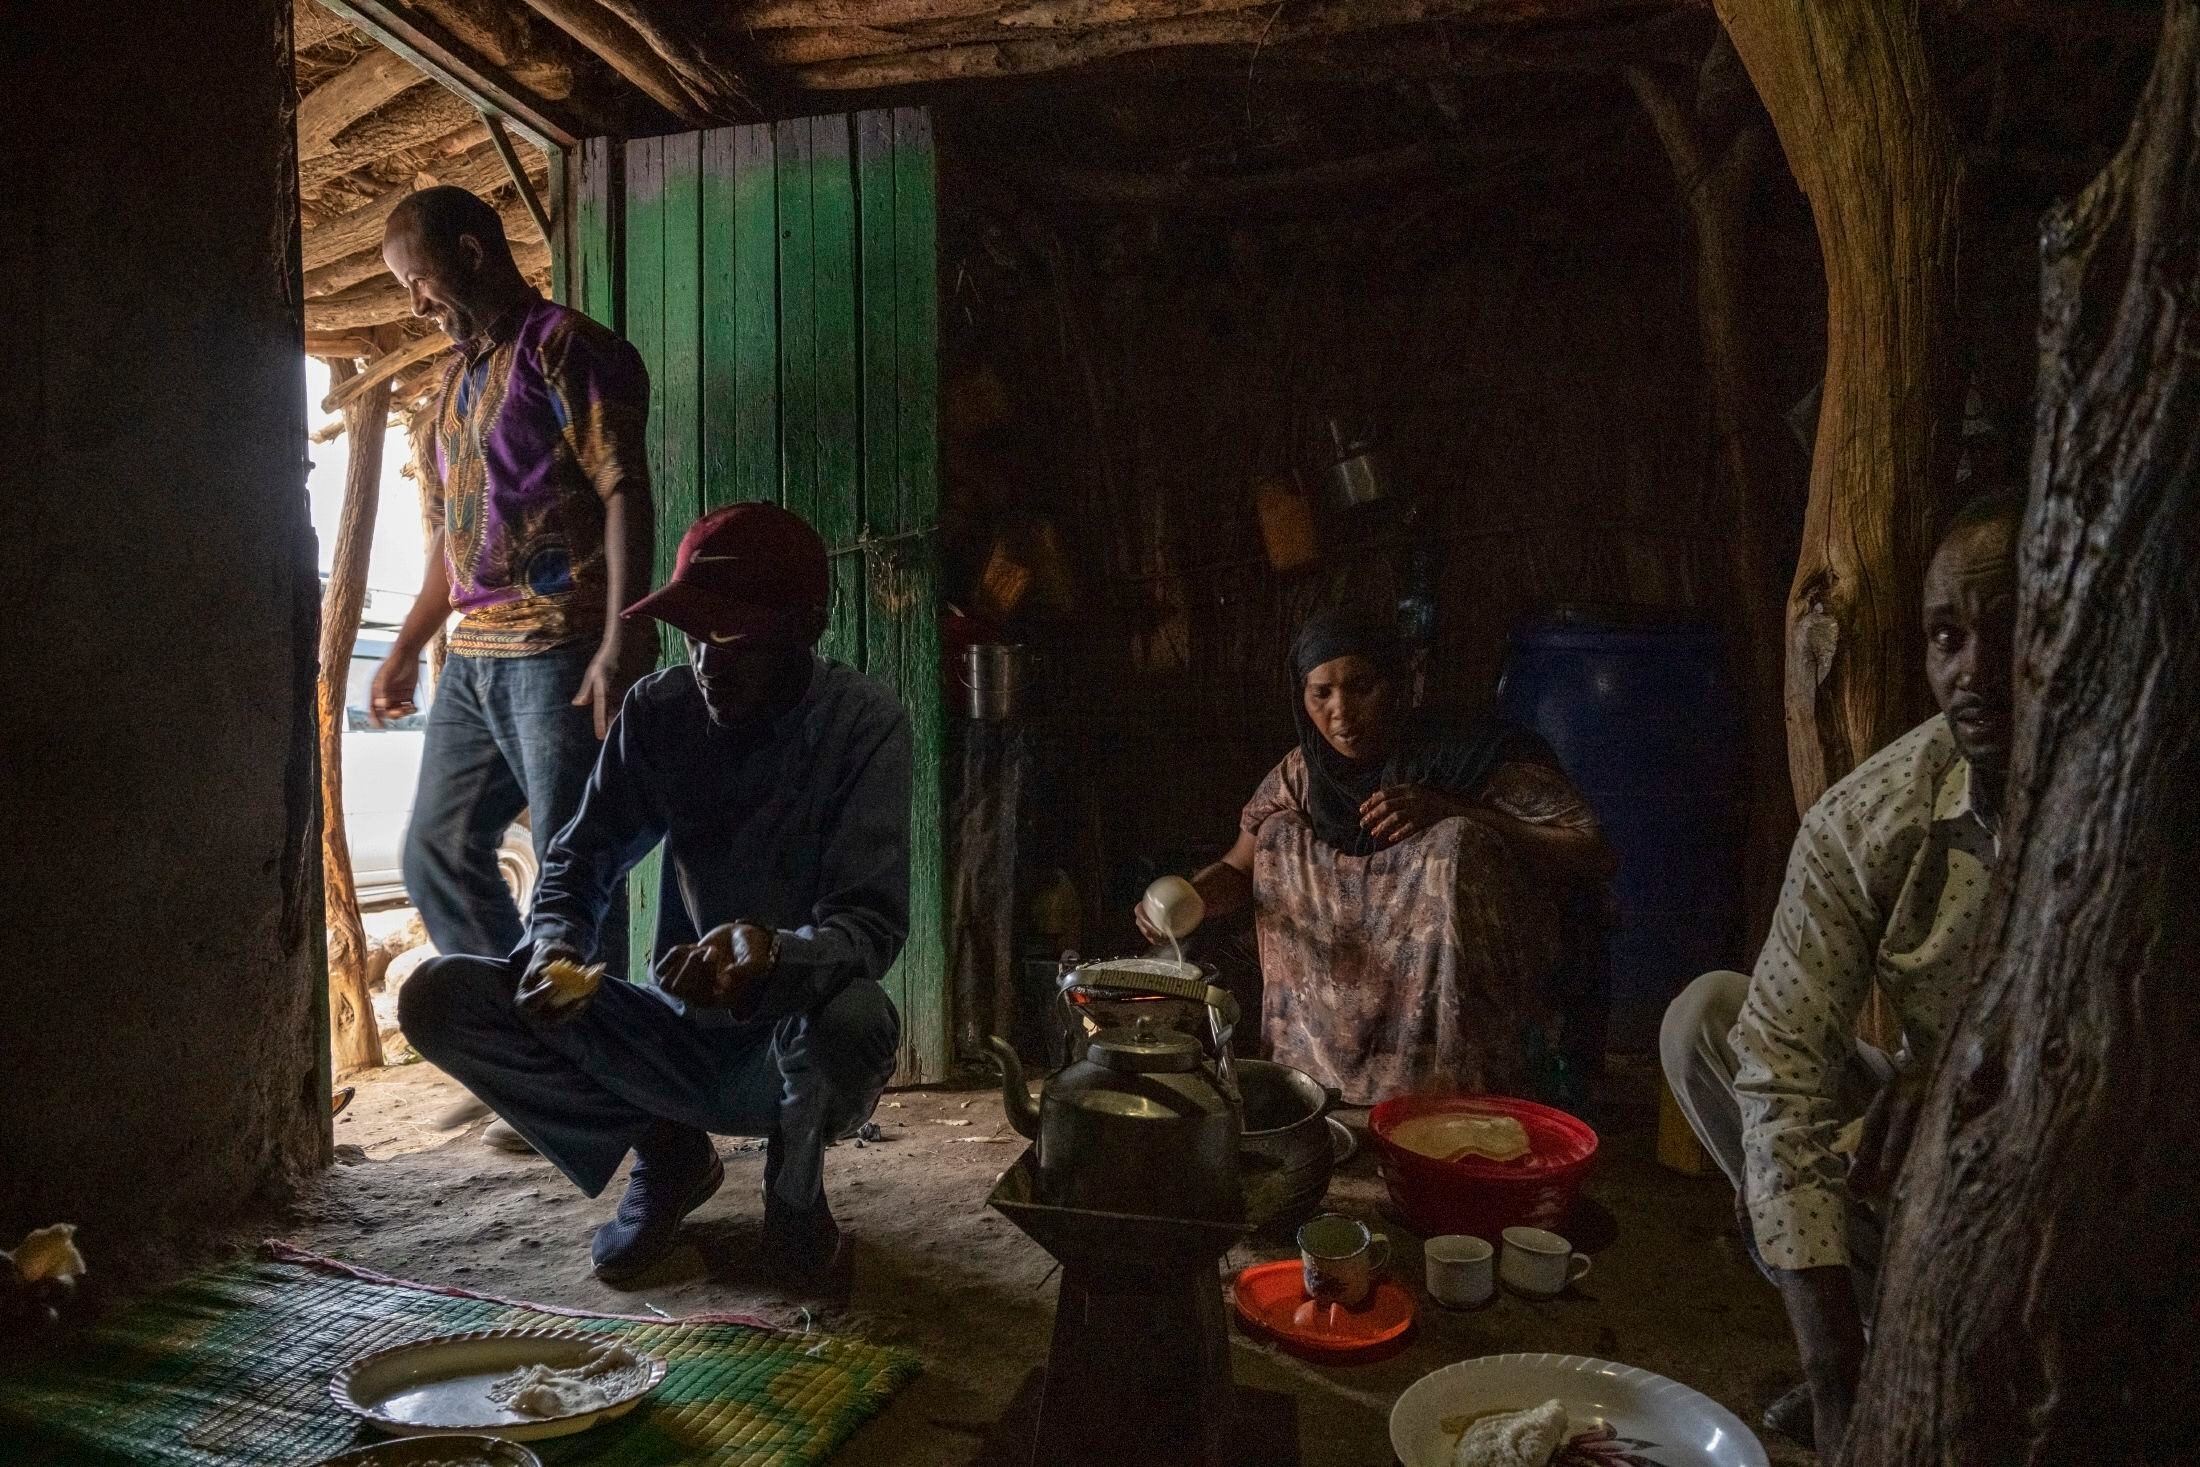 Una mujer prepara injeras para el desayuno en el pueblo de Gocti, cercano a la frontera con Somalilandia, donde no hay suministro eléctrico ni agua corriente. La injera forma parte de la dieta diaria etíope y es un pan plano hecho a base de teff, un cereal común en este país africano.